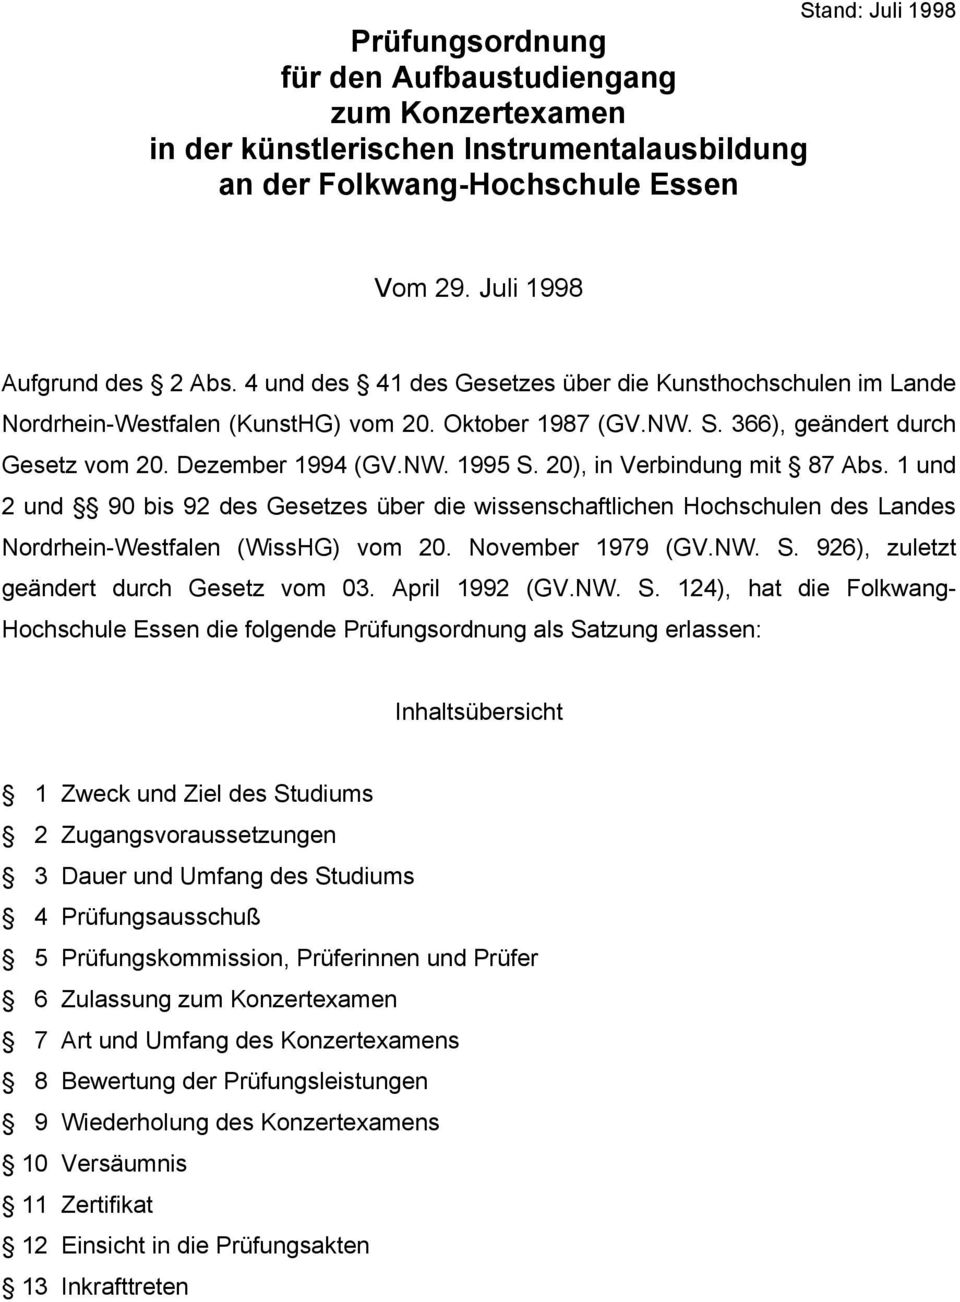 20), in Verbindung mit 87 Abs. 1 und 2 und 90 bis 92 des Gesetzes über die wissenschaftlichen Hochschulen des Landes Nordrhein-Westfalen (WissHG) vom 20. November 1979 (GV.NW. S.